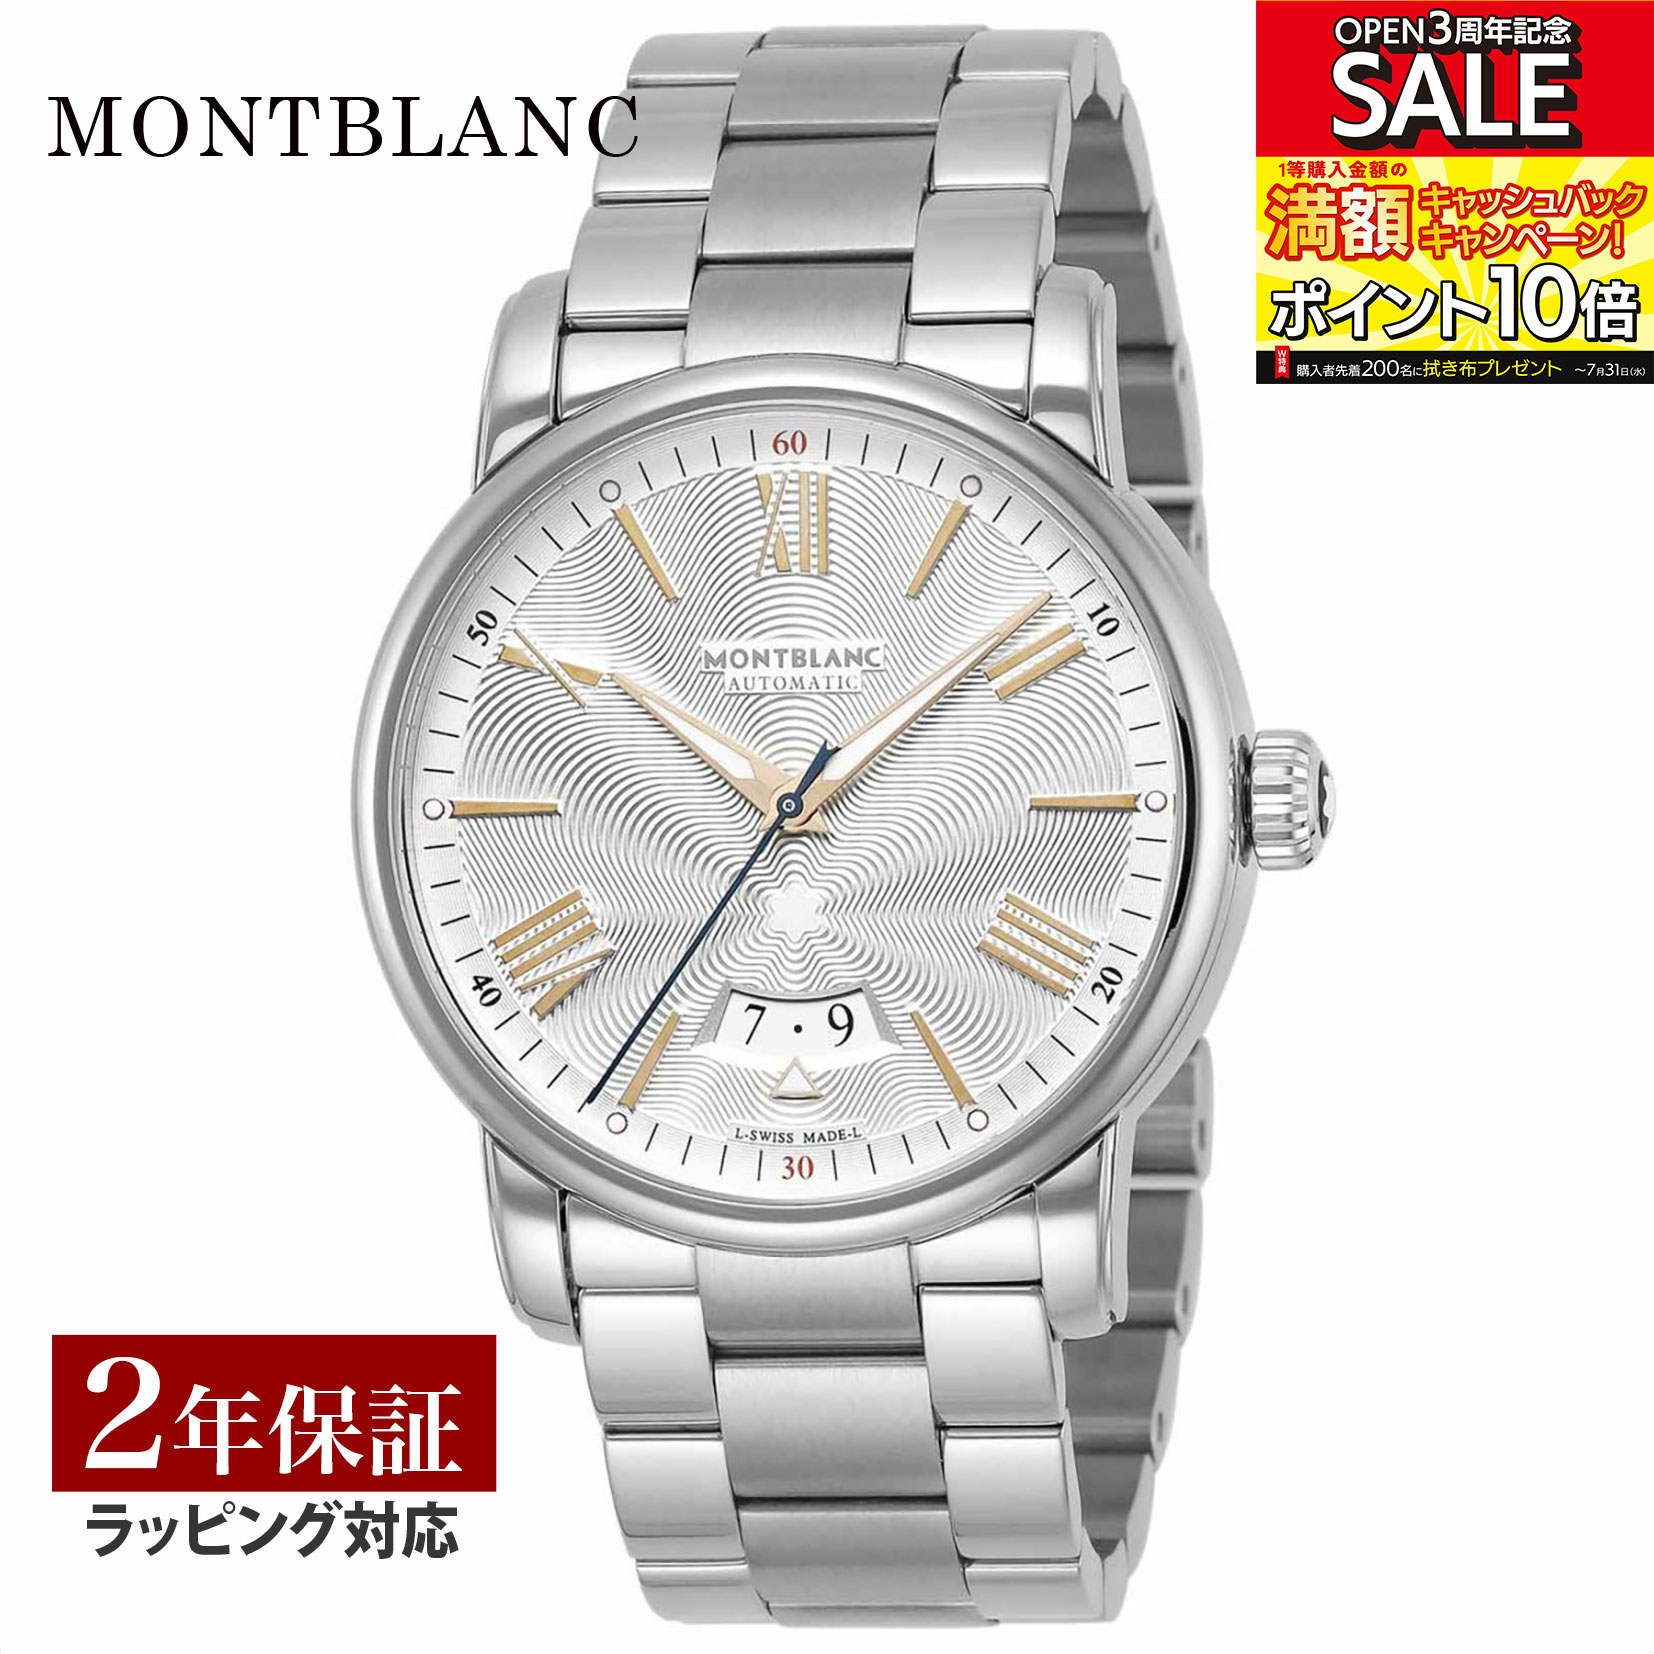 モンブラン ビジネス腕時計 メンズ モンブラン Montblanc メンズ 時計 4810 自動巻 シルバー 114852 時計 腕時計 高級腕時計 ブランド 【ローン金利無料】